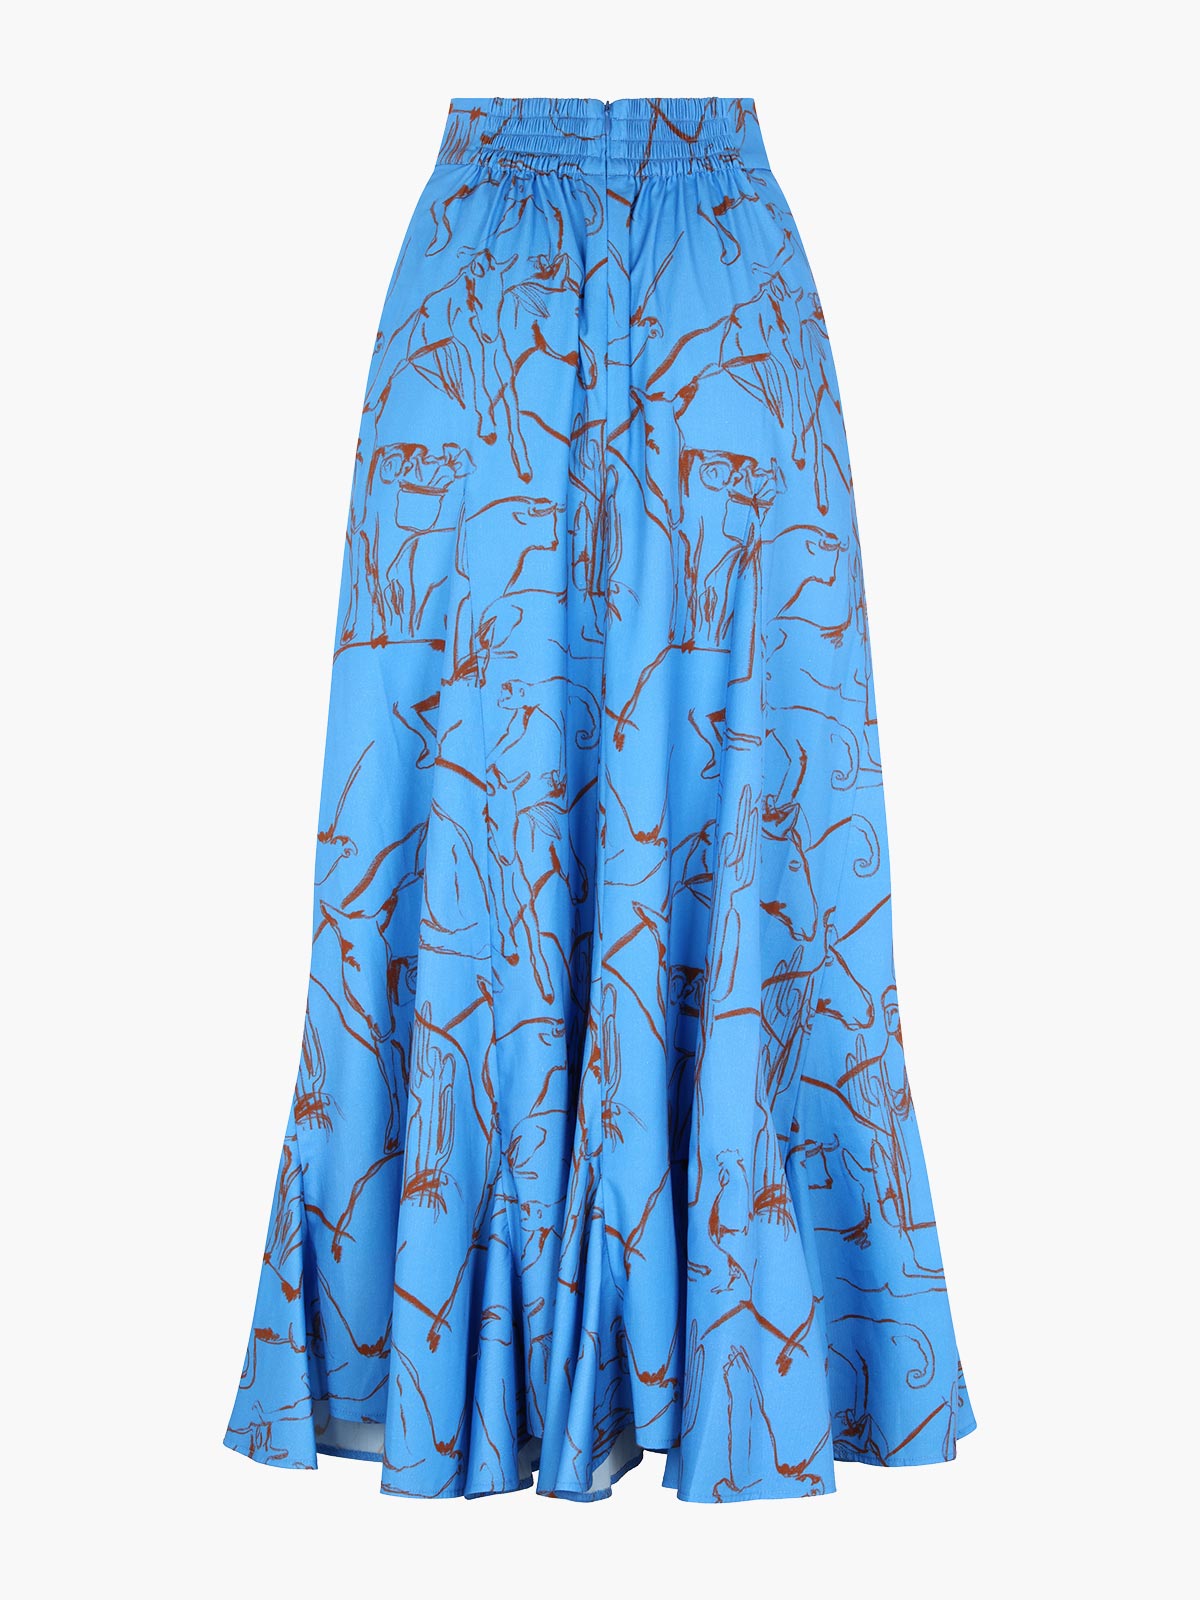 Nanay Skirt | Caballos Azul Nanay Skirt | Caballos Azul